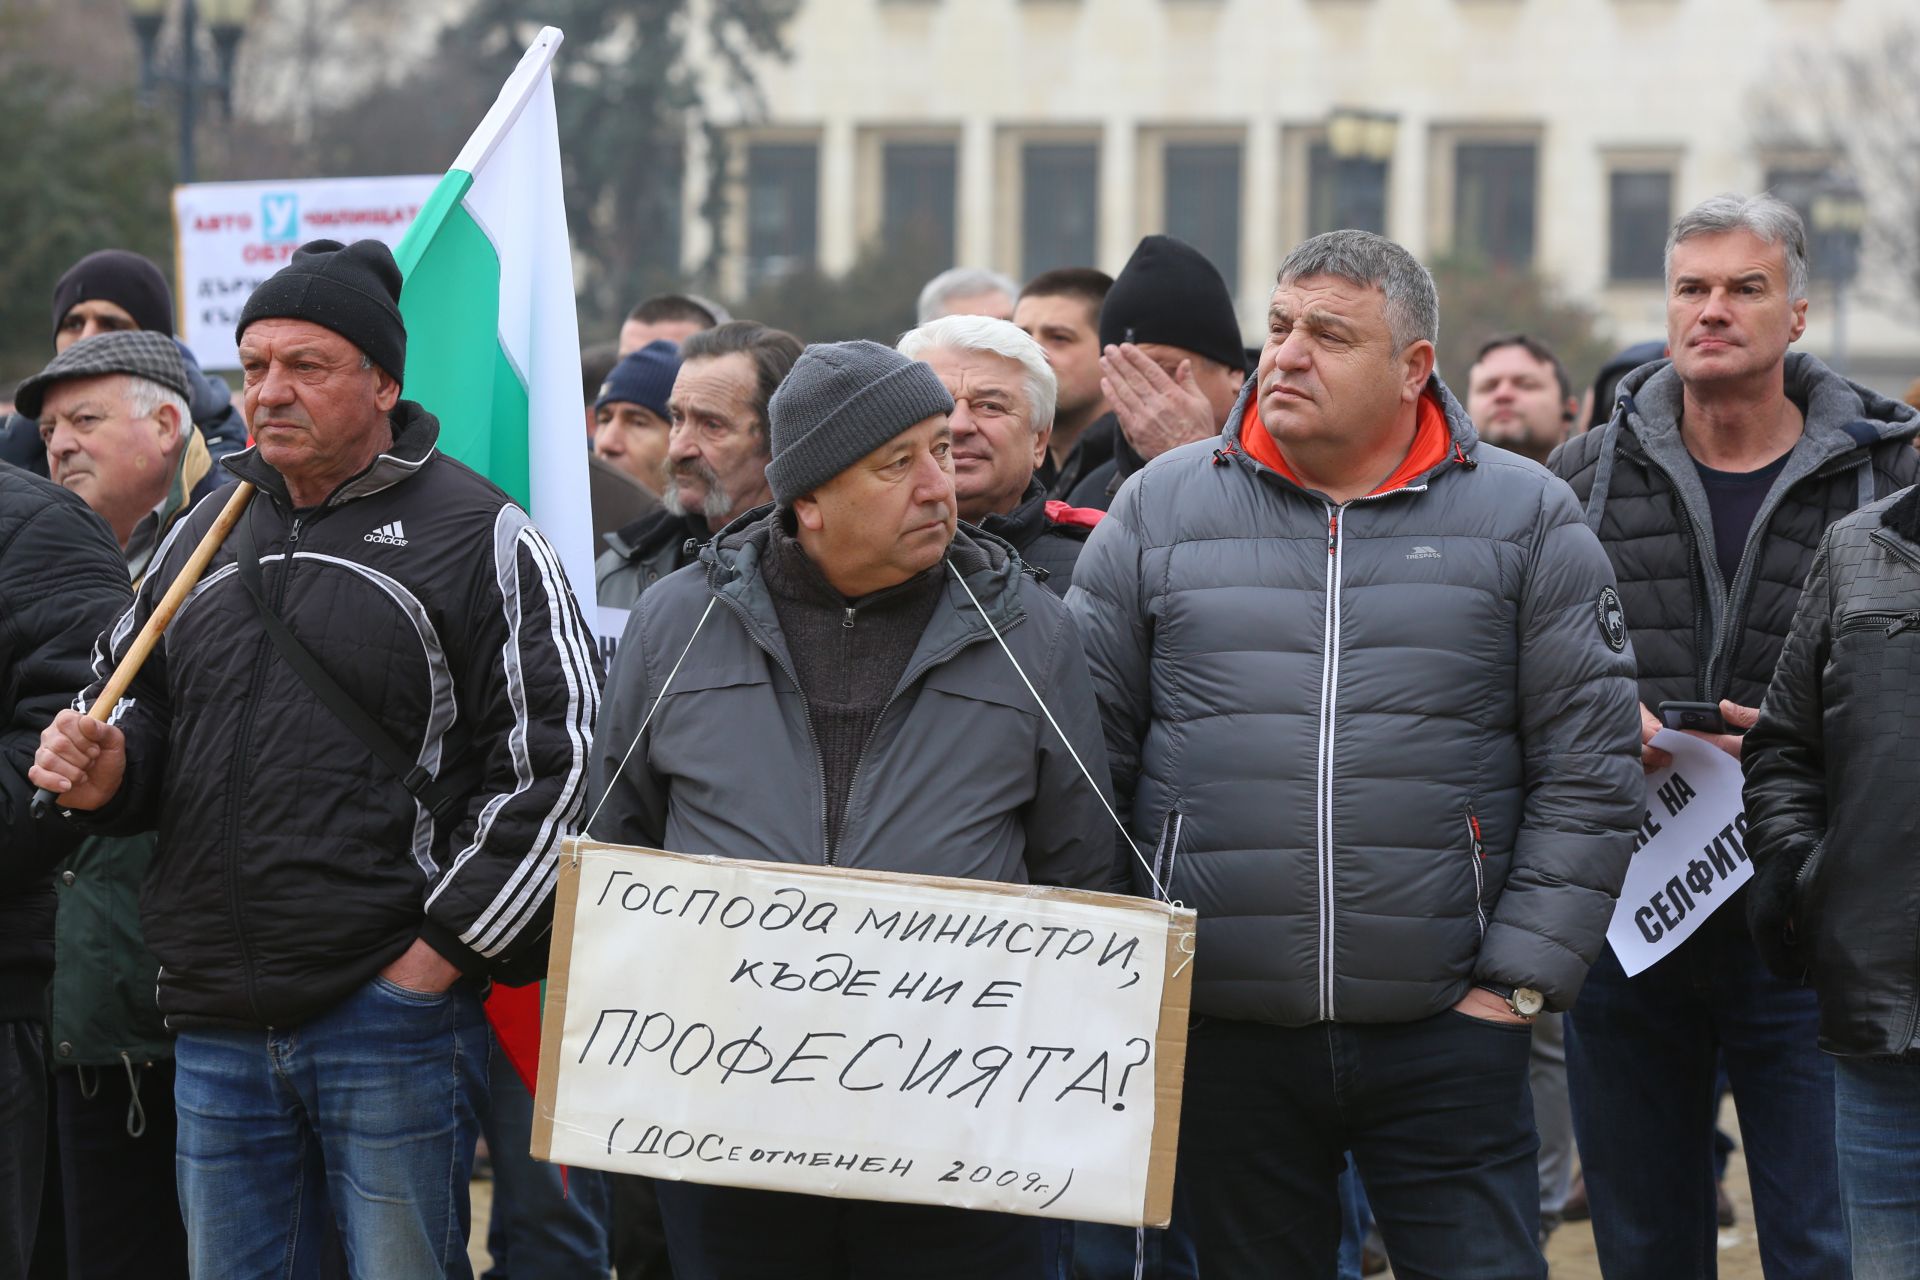 Протест на автоинструктори се проведе на площад “Александър Батенберг” в столицата